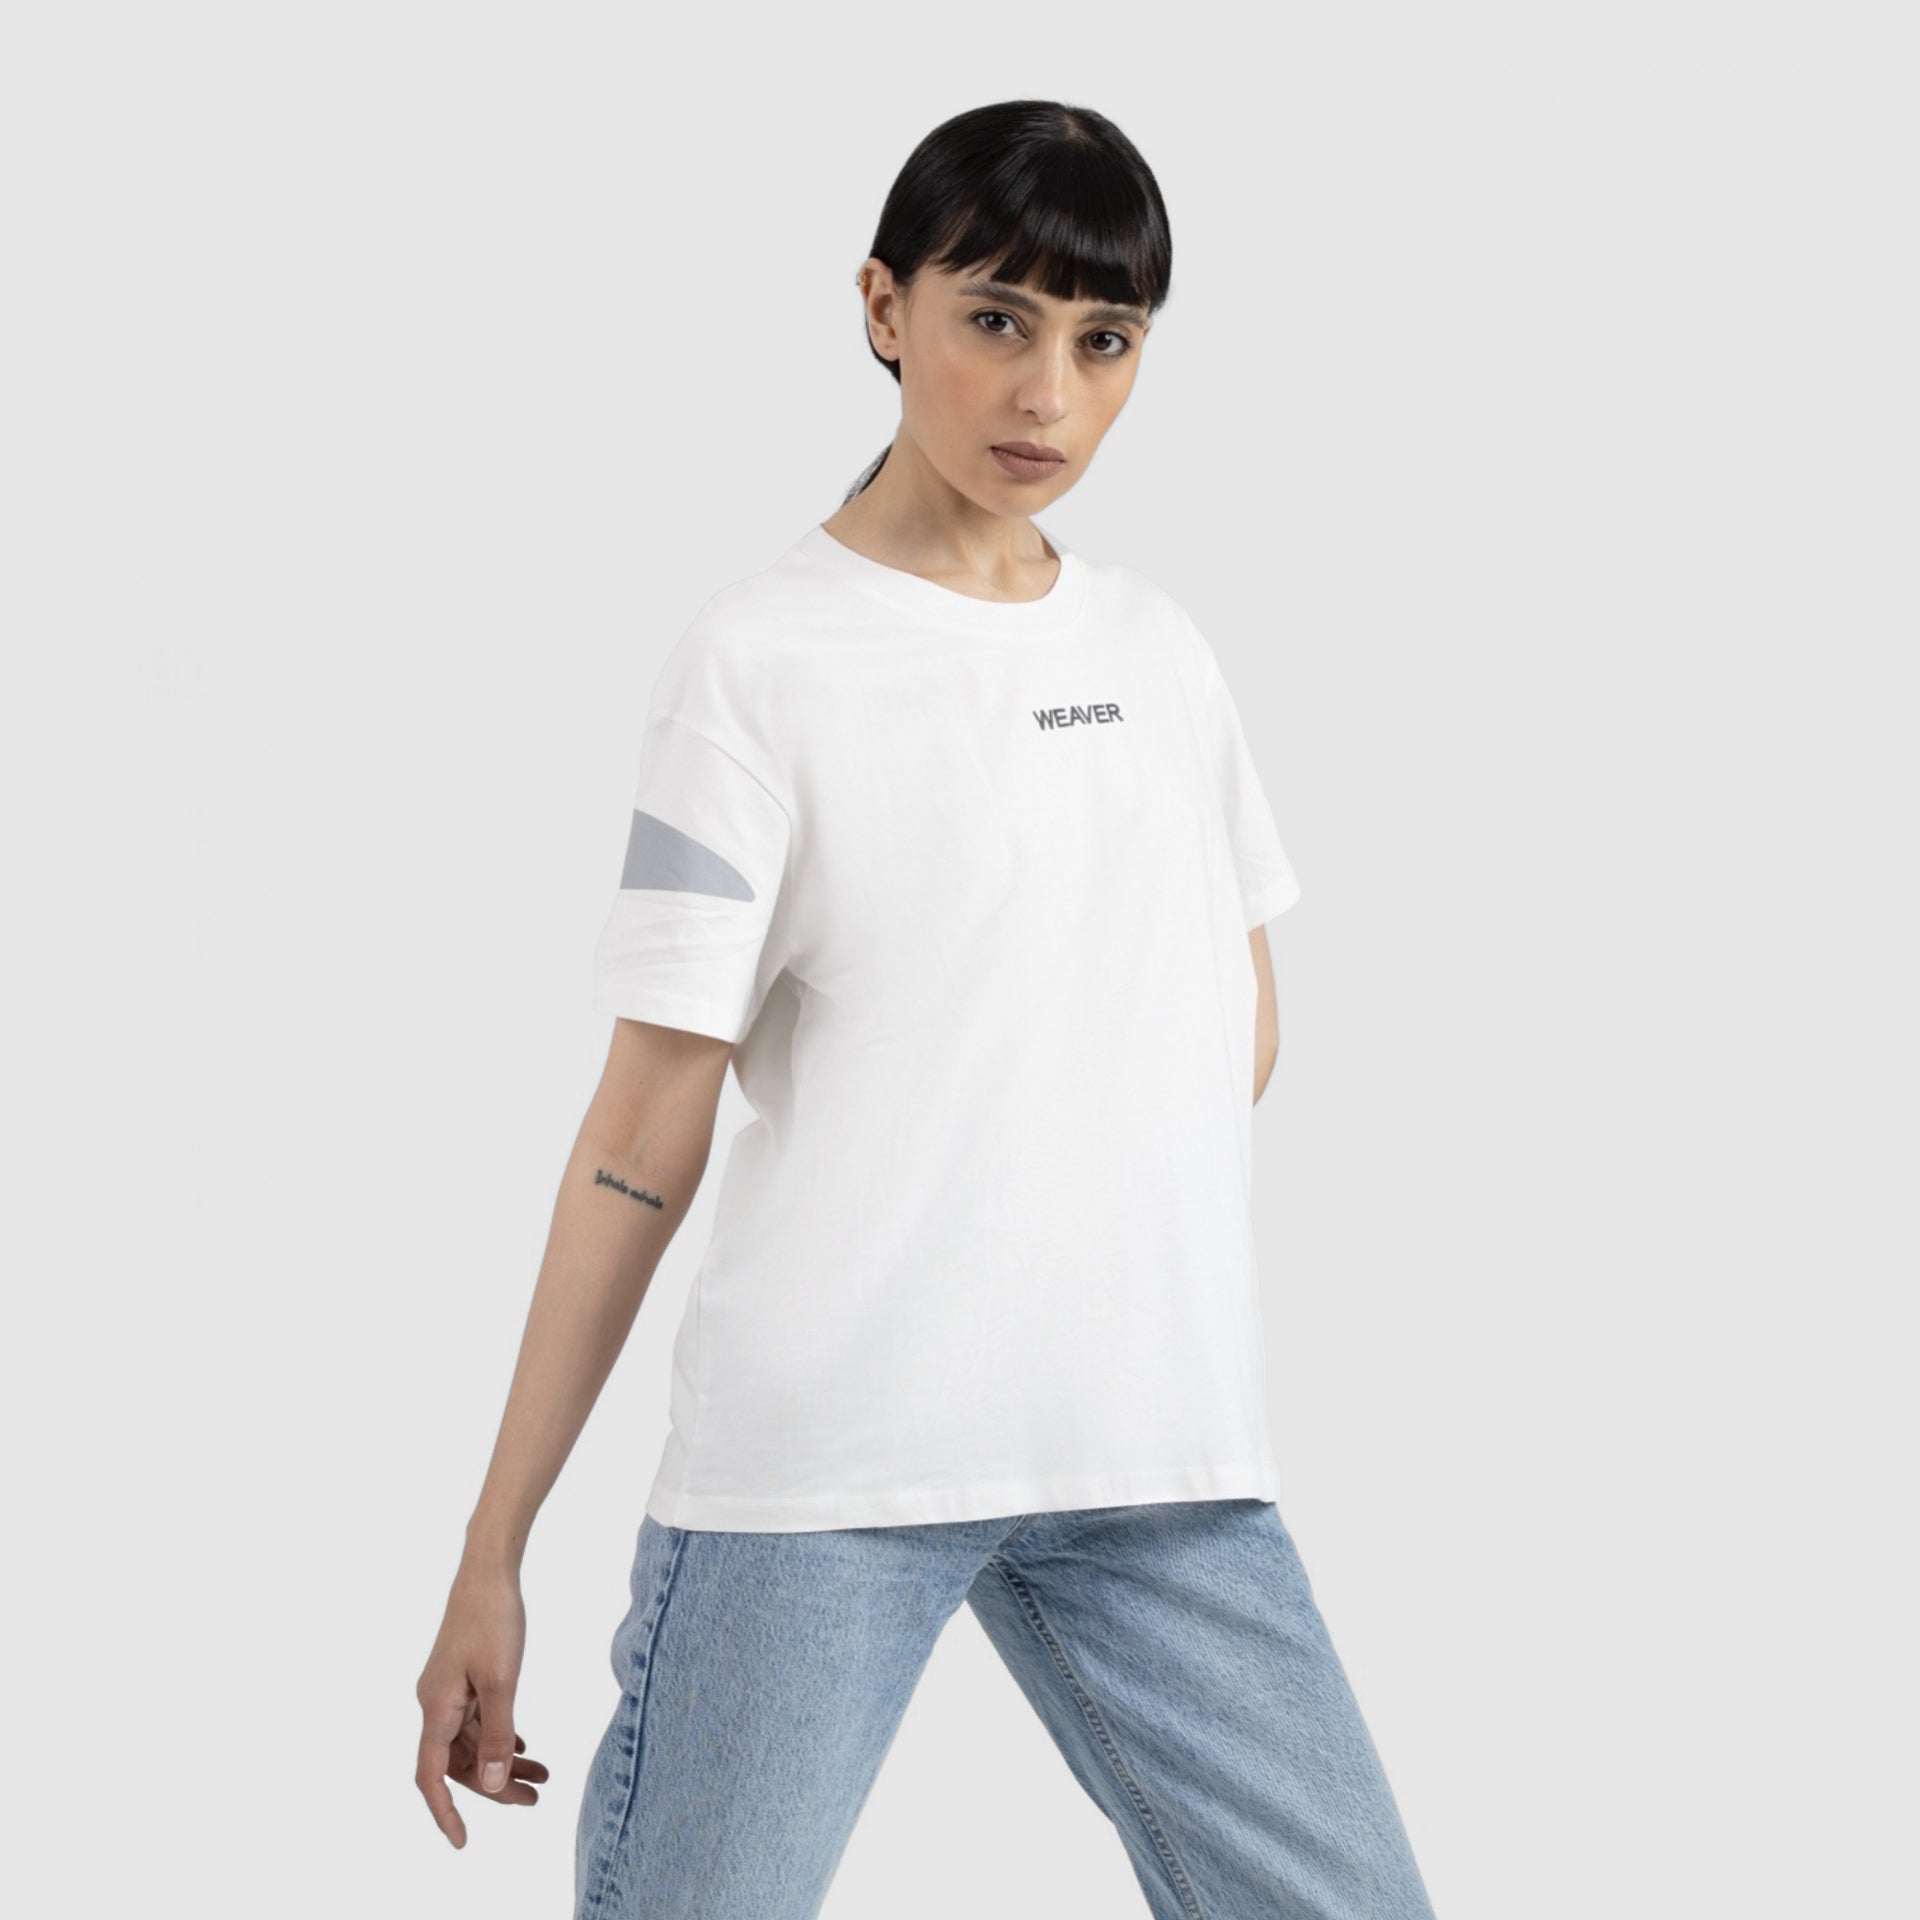 White Scissors T-shirt From Weaver Design